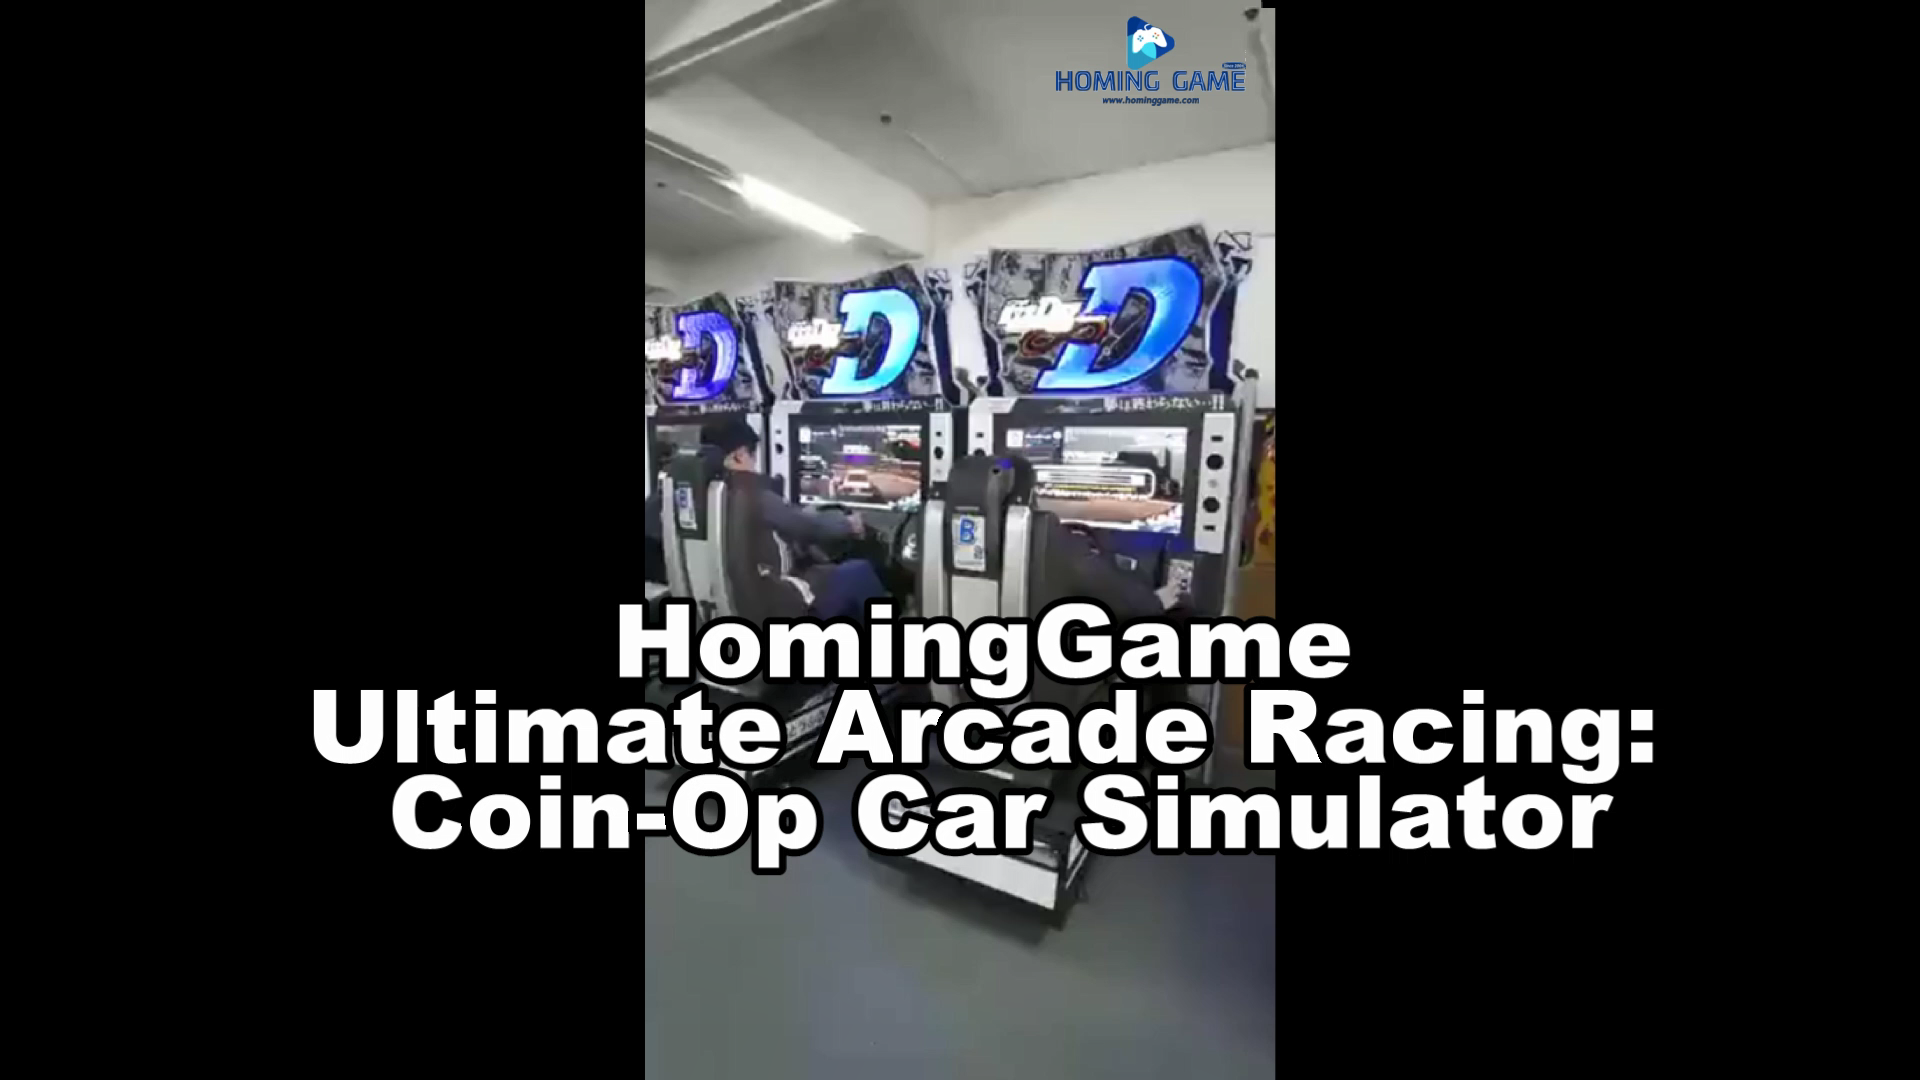 HomingGame Arcade Racing Car Coin-Op Game Simulator in Action! #ArcadeGames #RacingSimulator